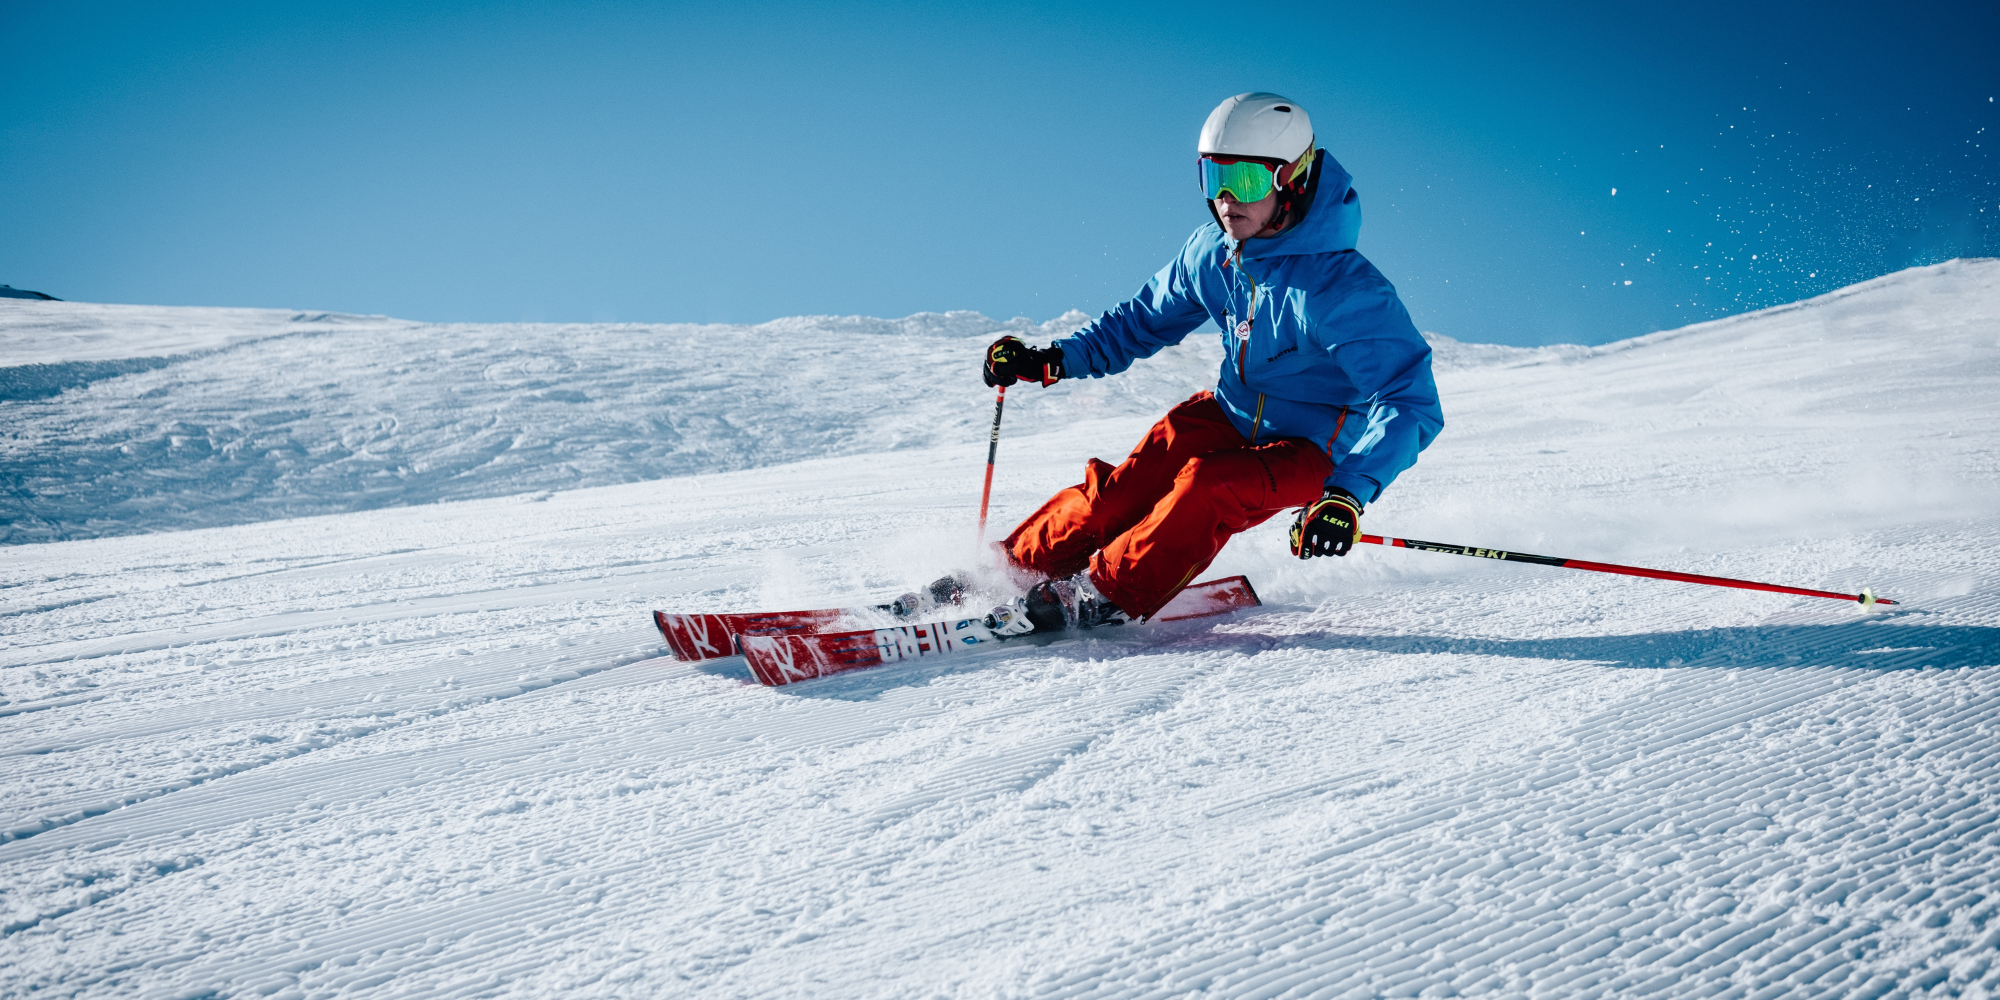 Comment bien entretenir sa paire de ski / son snowboard ?